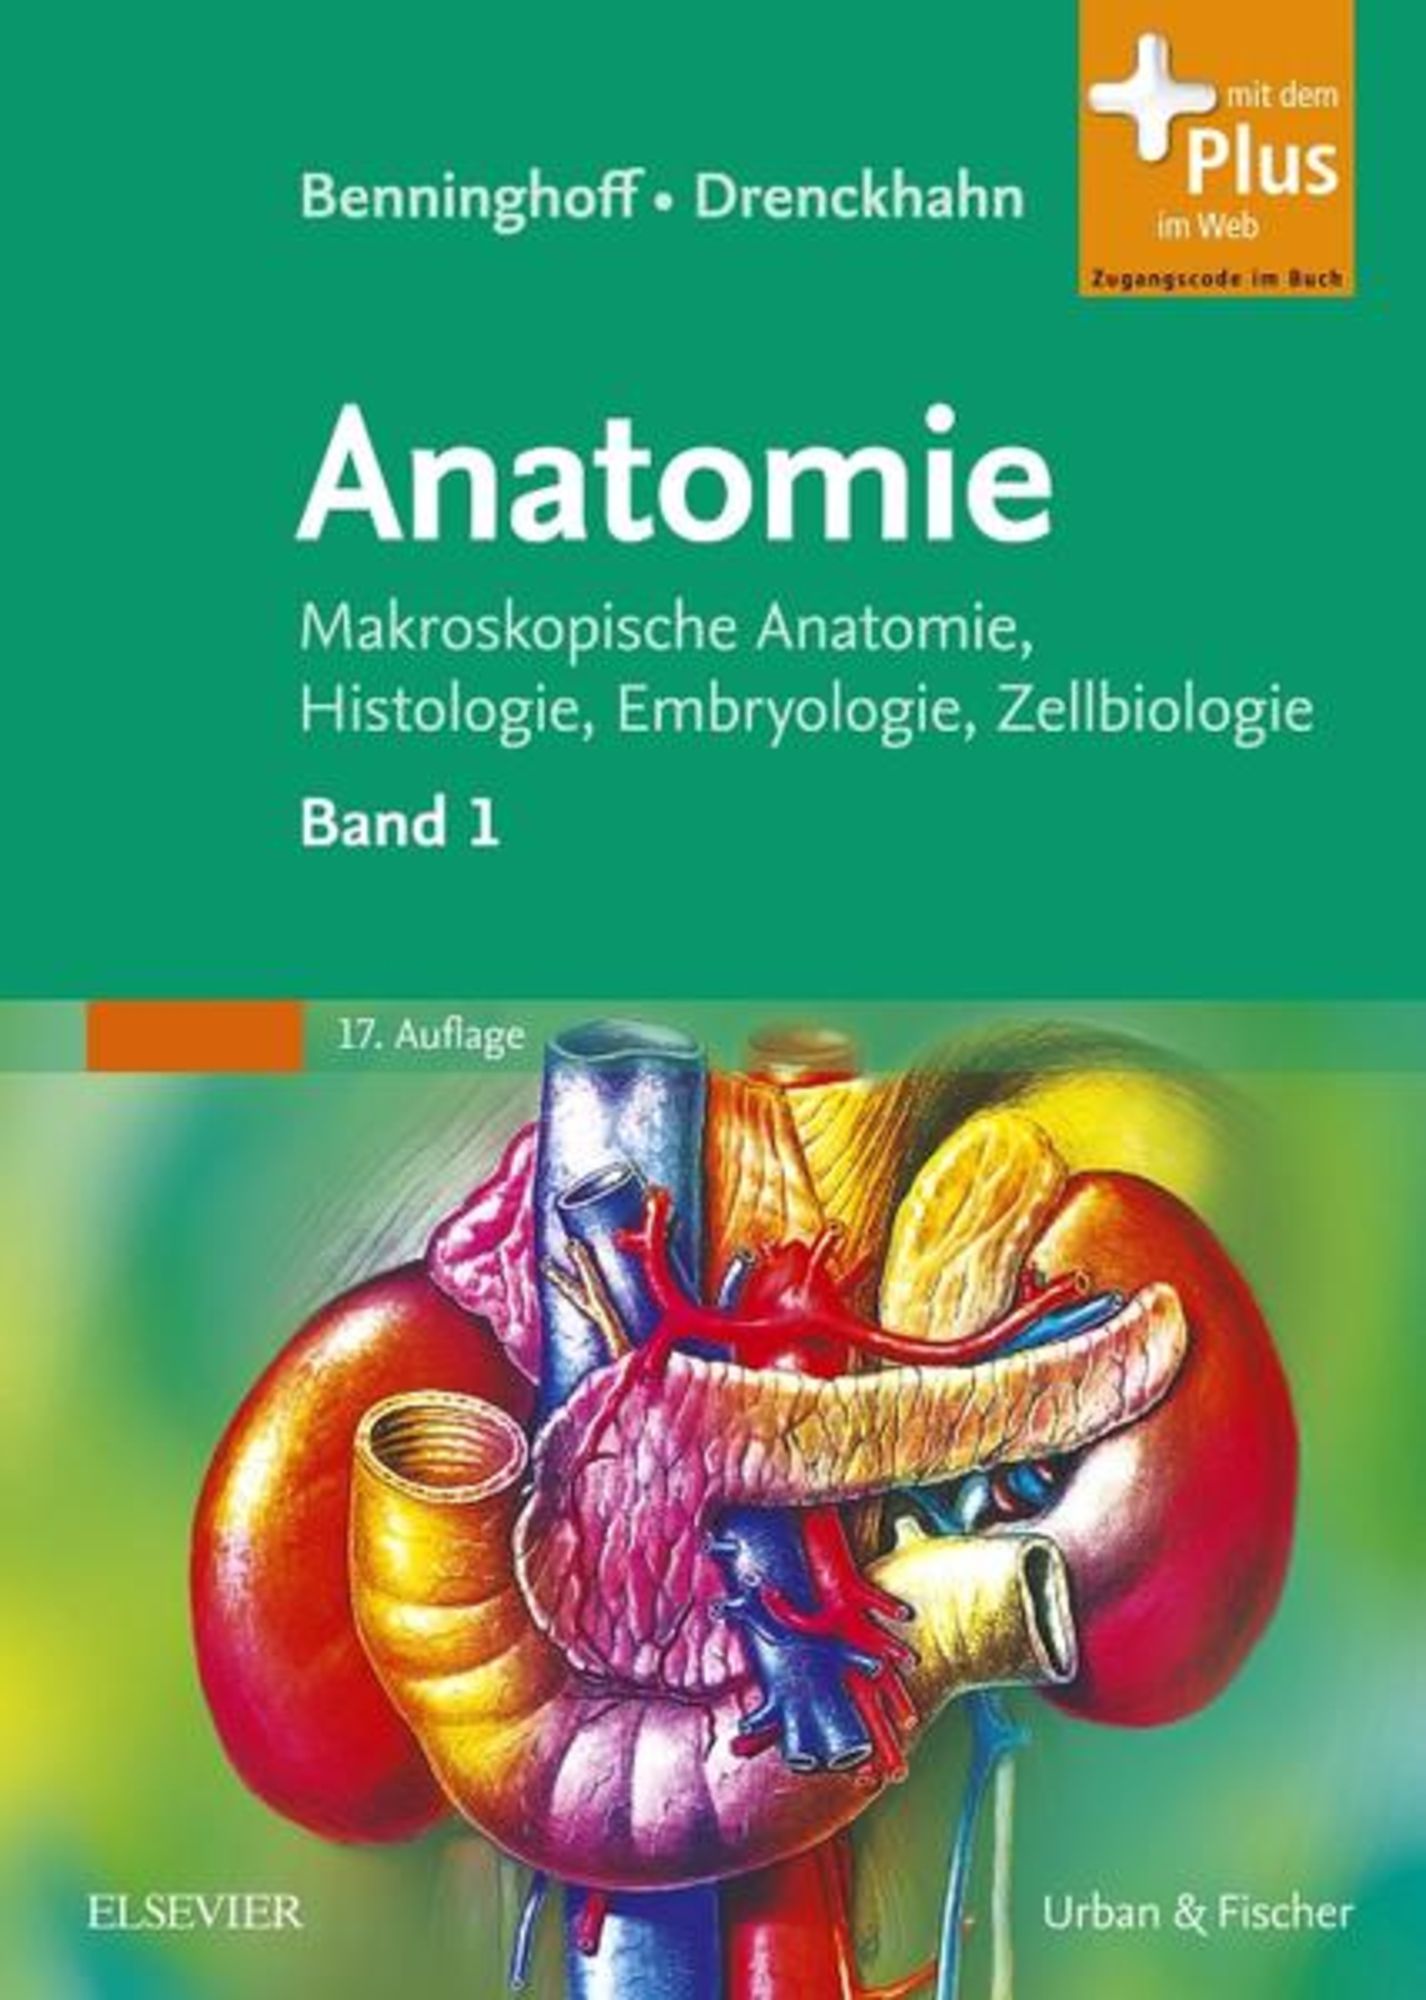 Benninghoff, Drenckhahn, - Buch von \'978-3-437-42342-0\' Anatomie\' \'Alfred Benninghoff\' 